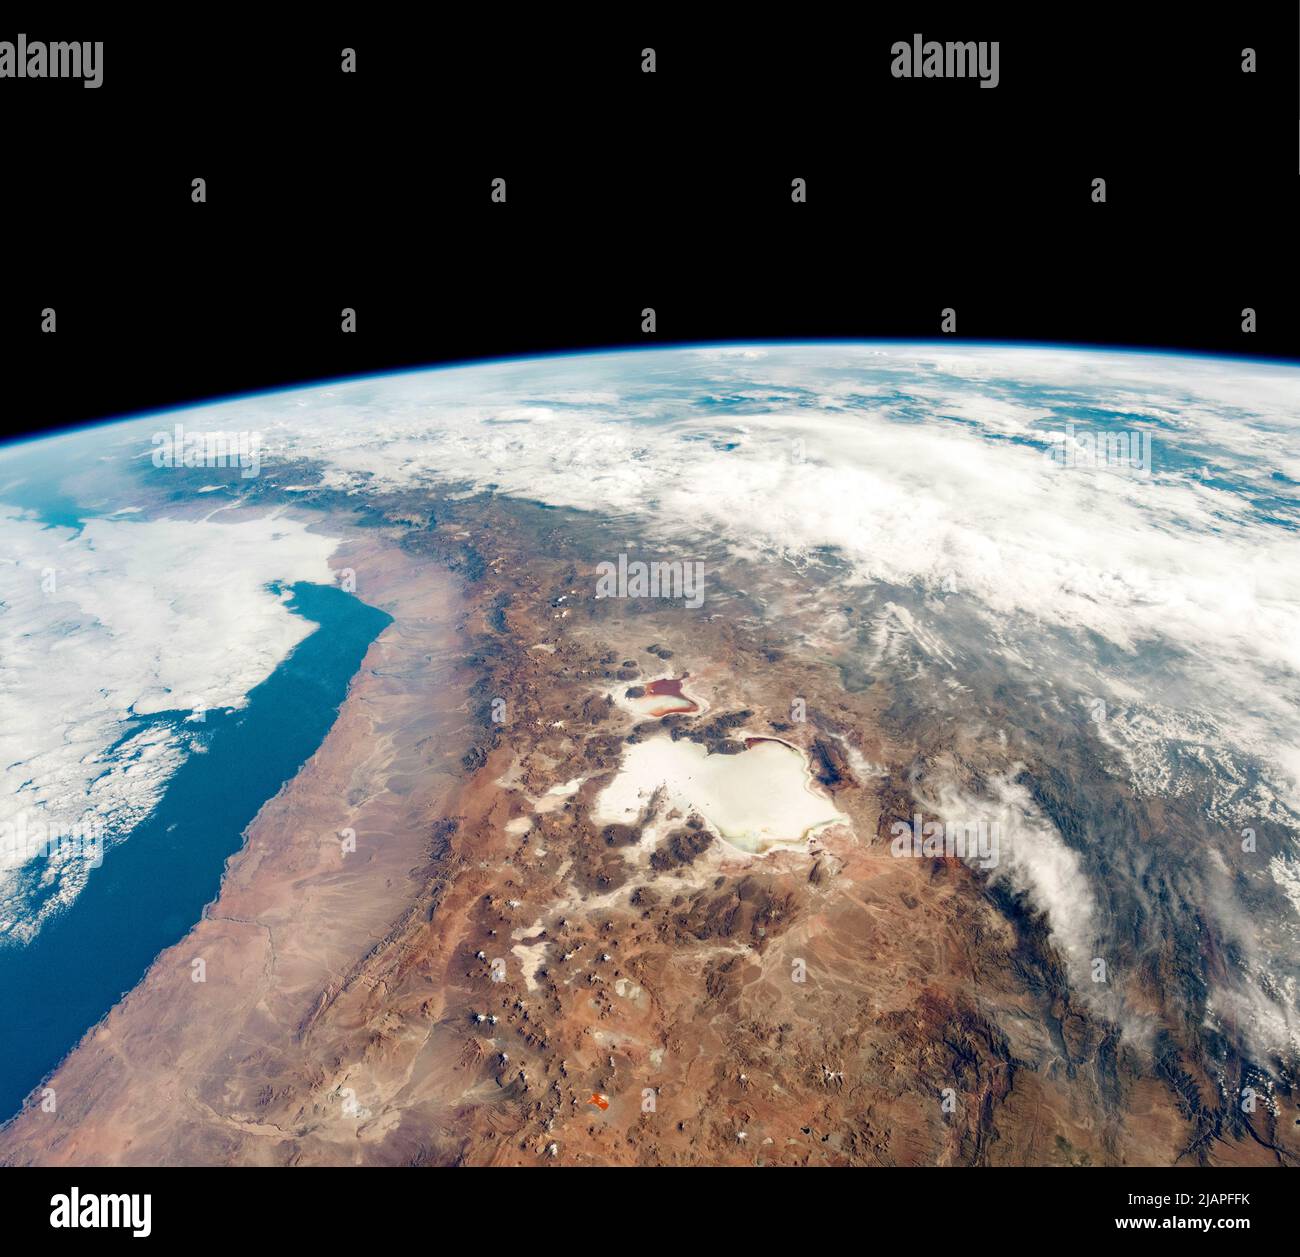 Mientras orbitaba sobre América del Sur, un astronauta de la Estación Espacial Internacional tomó esta fotografía del desierto de Atacama y las numerosas salinas de los Andes a lo largo de la frontera de Chile y Bolivia. La pieza central es el Salar de Uyuni, el salar más grande de la Tierra. Captura regularmente la atención de los astronautas debido a su alto contraste con el paisaje marrón. La NASA utiliza el desierto de Atacama para probar hígados y otros instrumentos porque el área es un buen análogo para la exploración astrobiológica futura de Marte. Una versión optimizada y mejorada de las imágenes de la NASA. Crédito: NASA Foto de stock